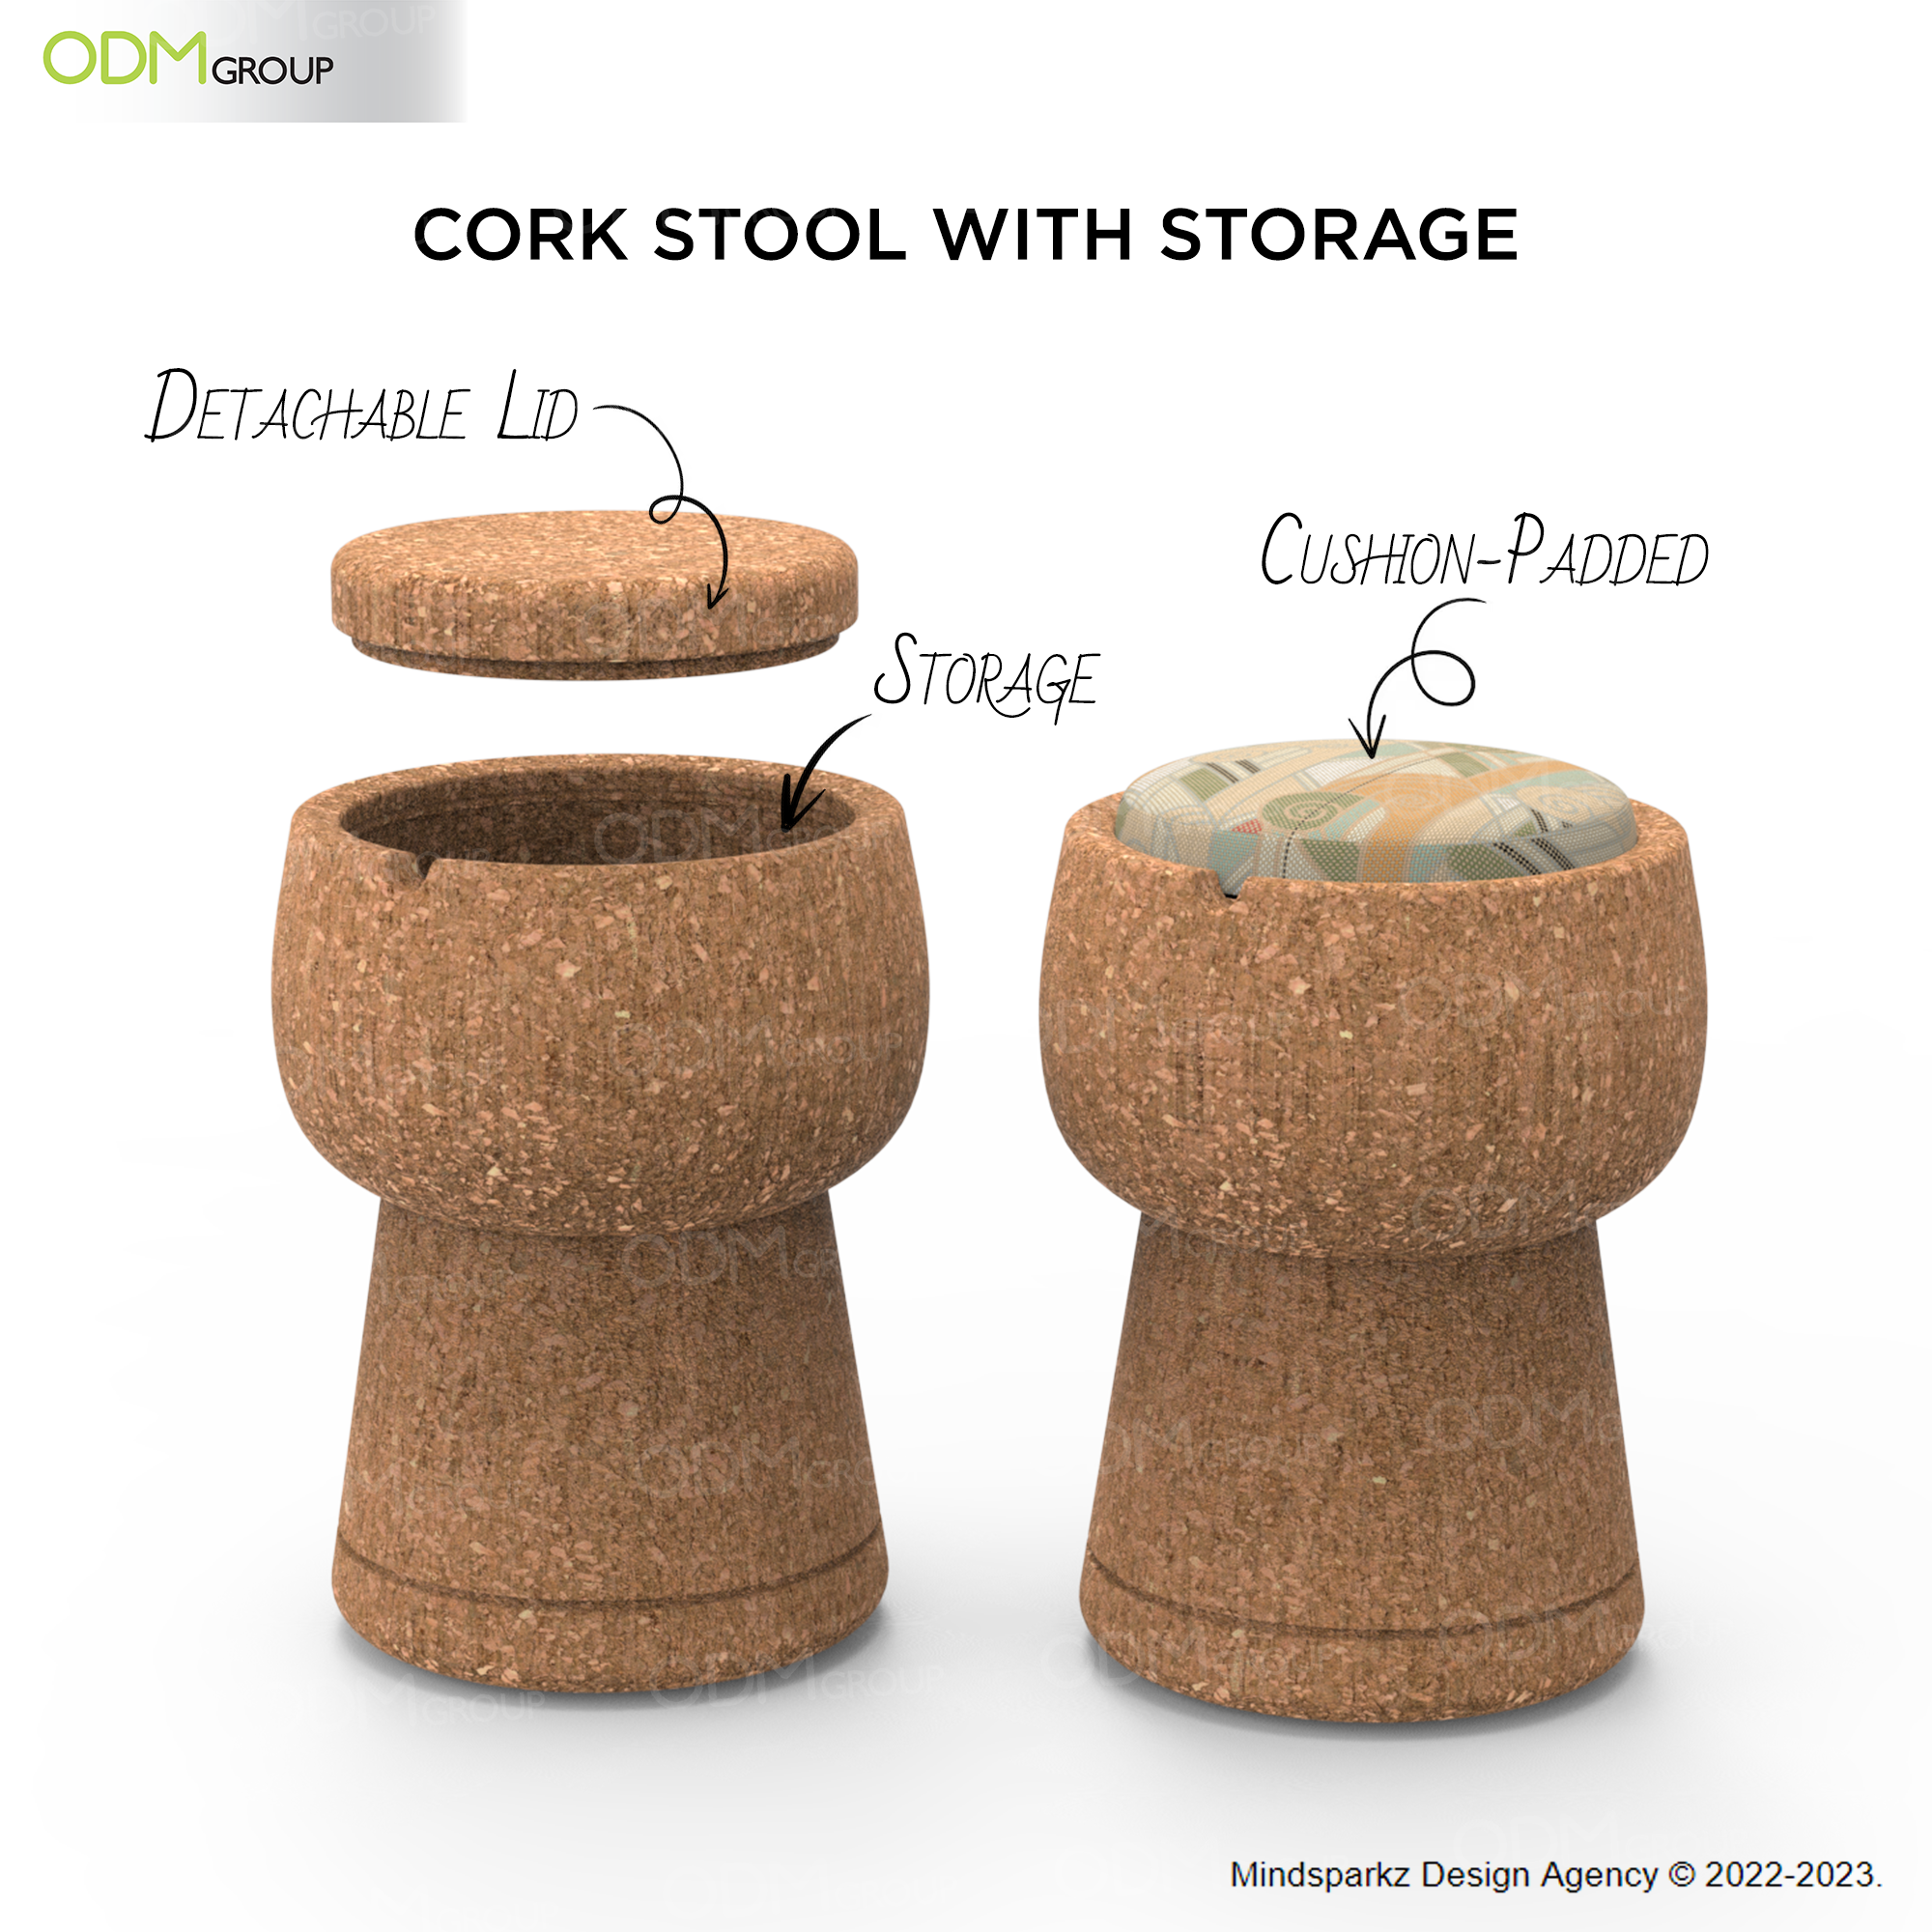 Cork stool with storage